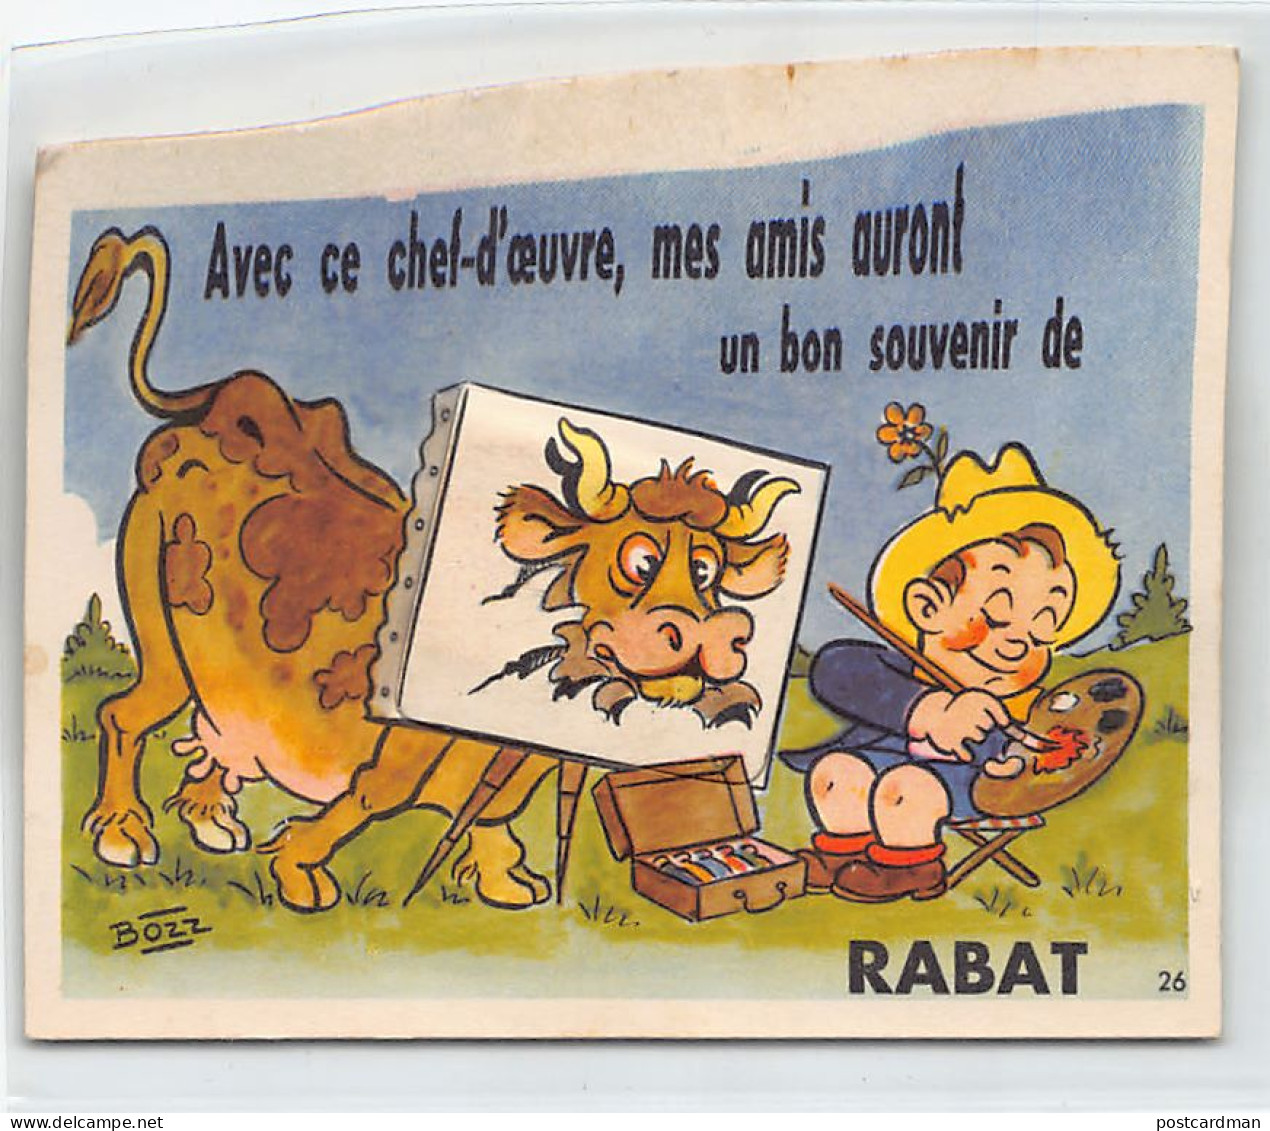 Maroc - RABAT - Carte à Dépliant - Dessinateur Bozz - Ed. CAP 26 - Rabat